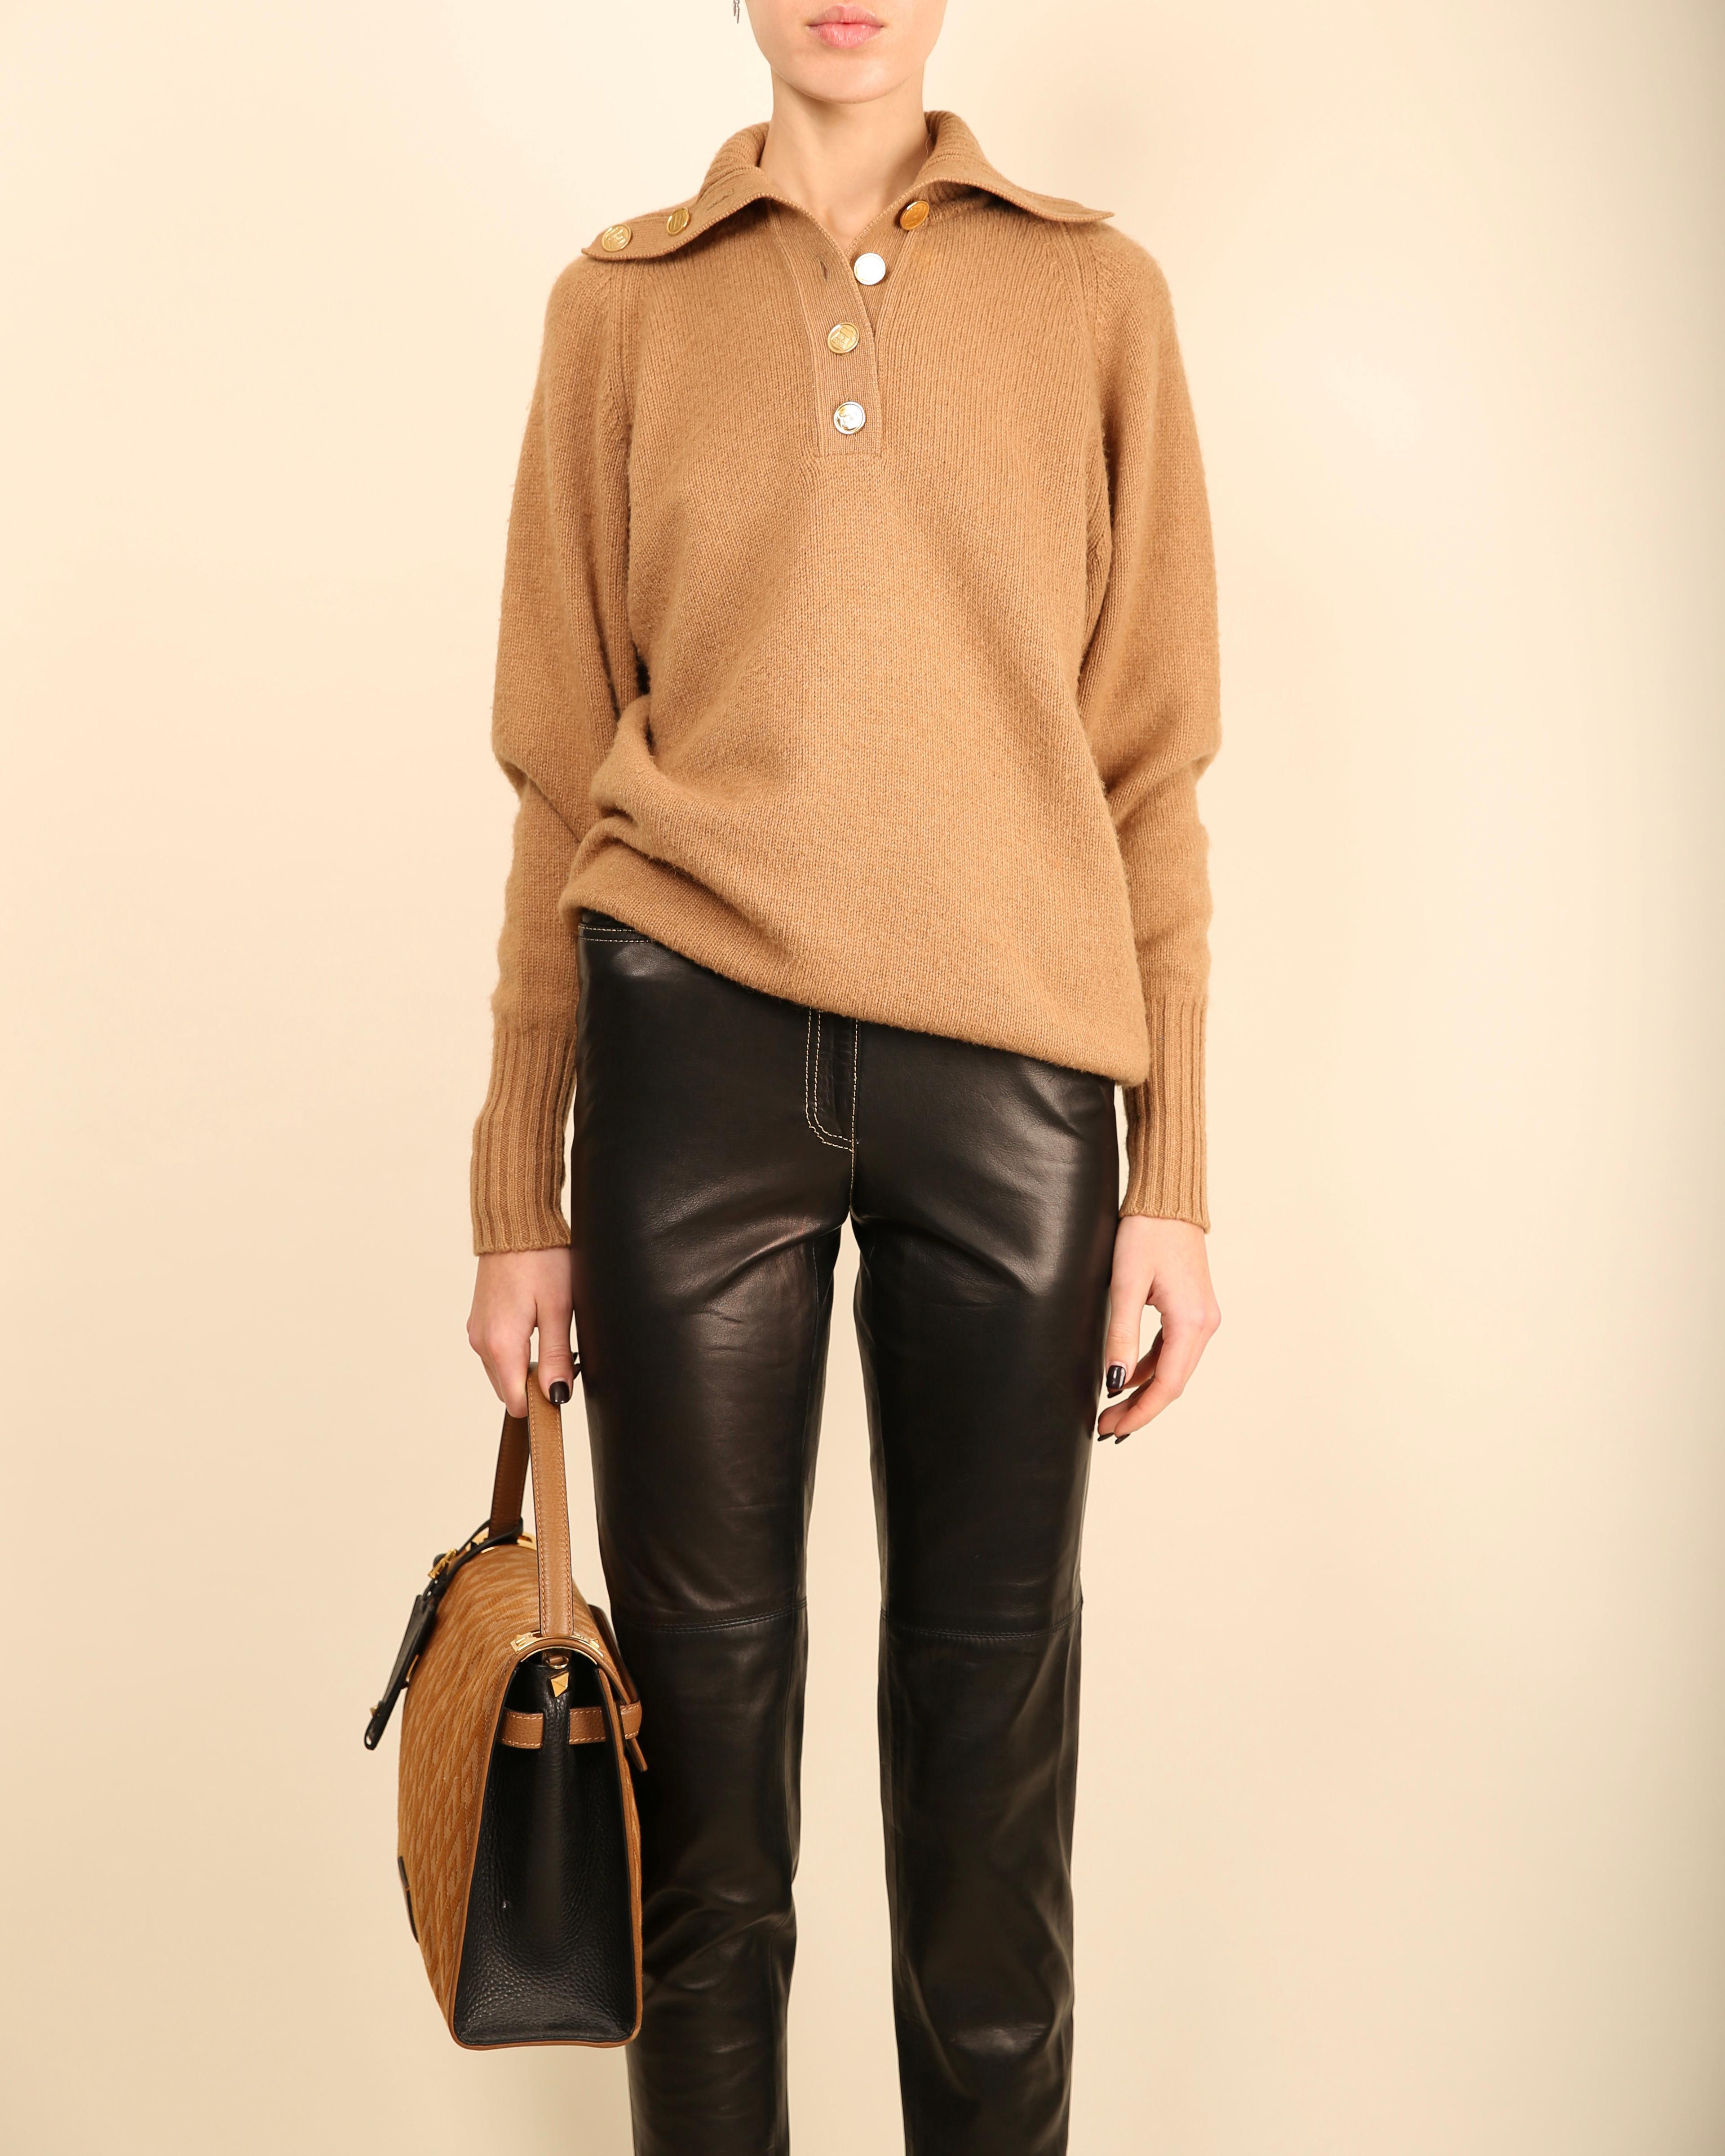 Chanel vtg tan camel beige turtleneck gold logo button cashmere dress sweater  For Sale 7